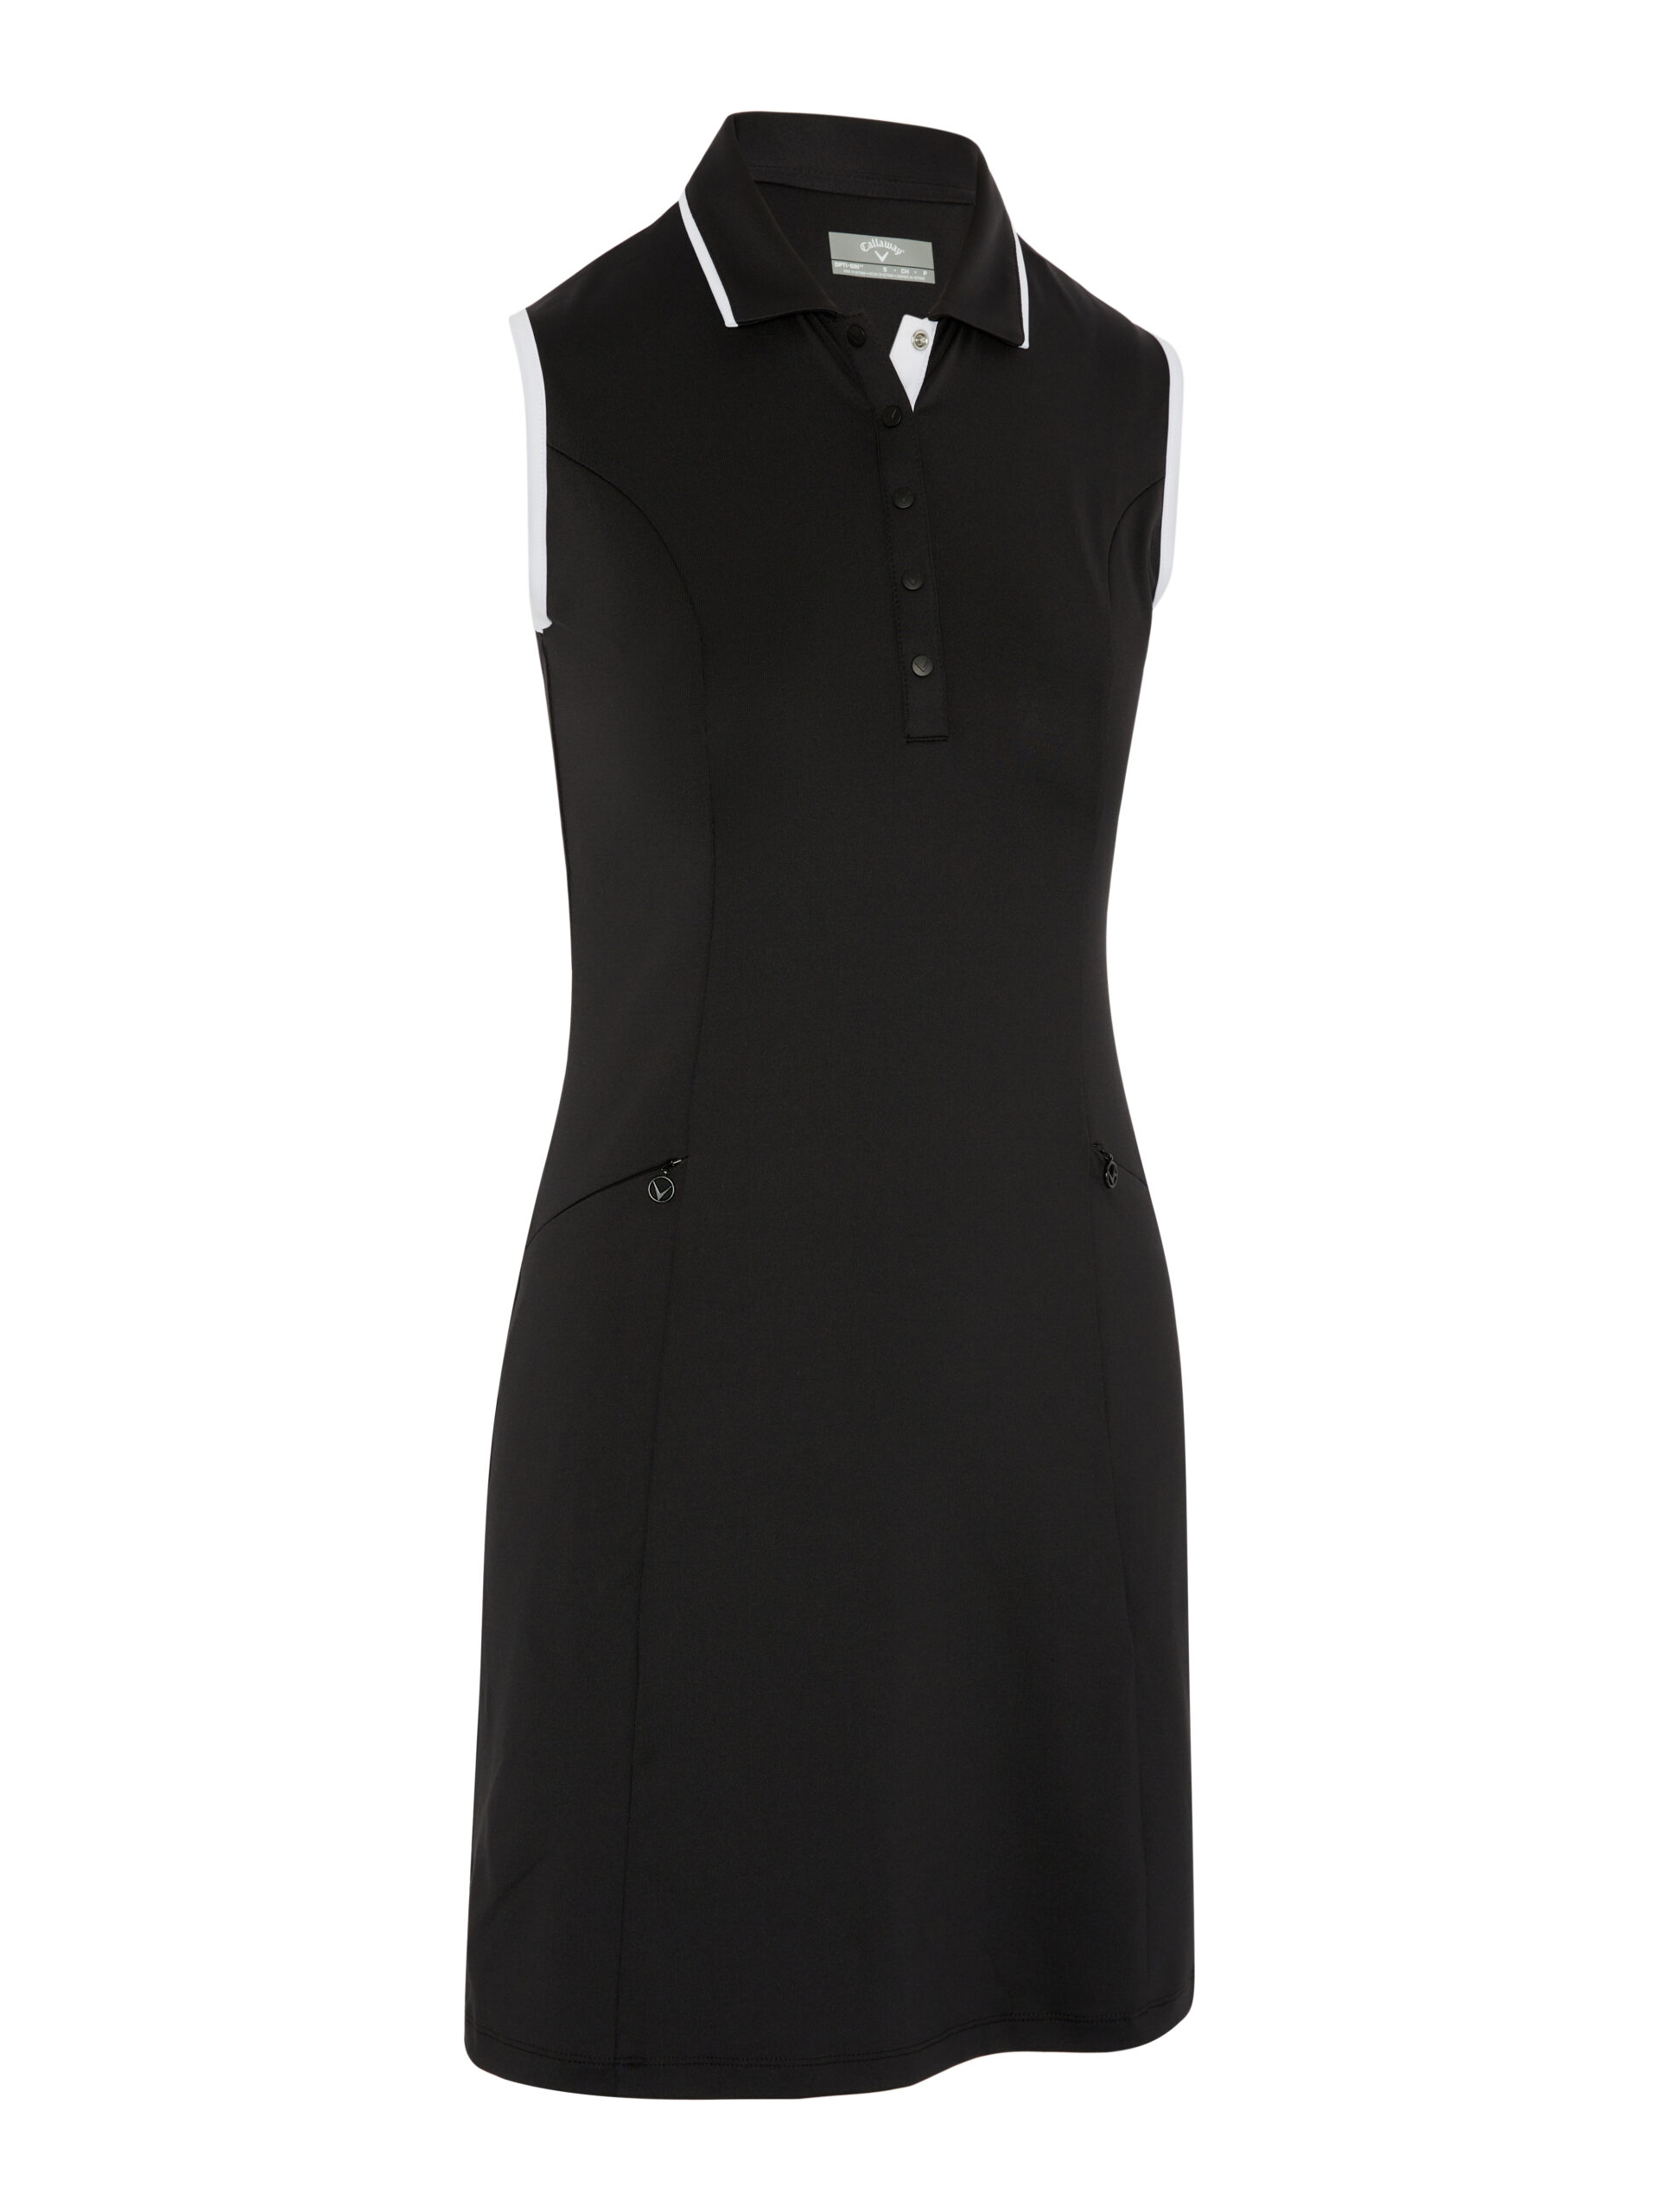 Callaway dámské golfové šaty, černé